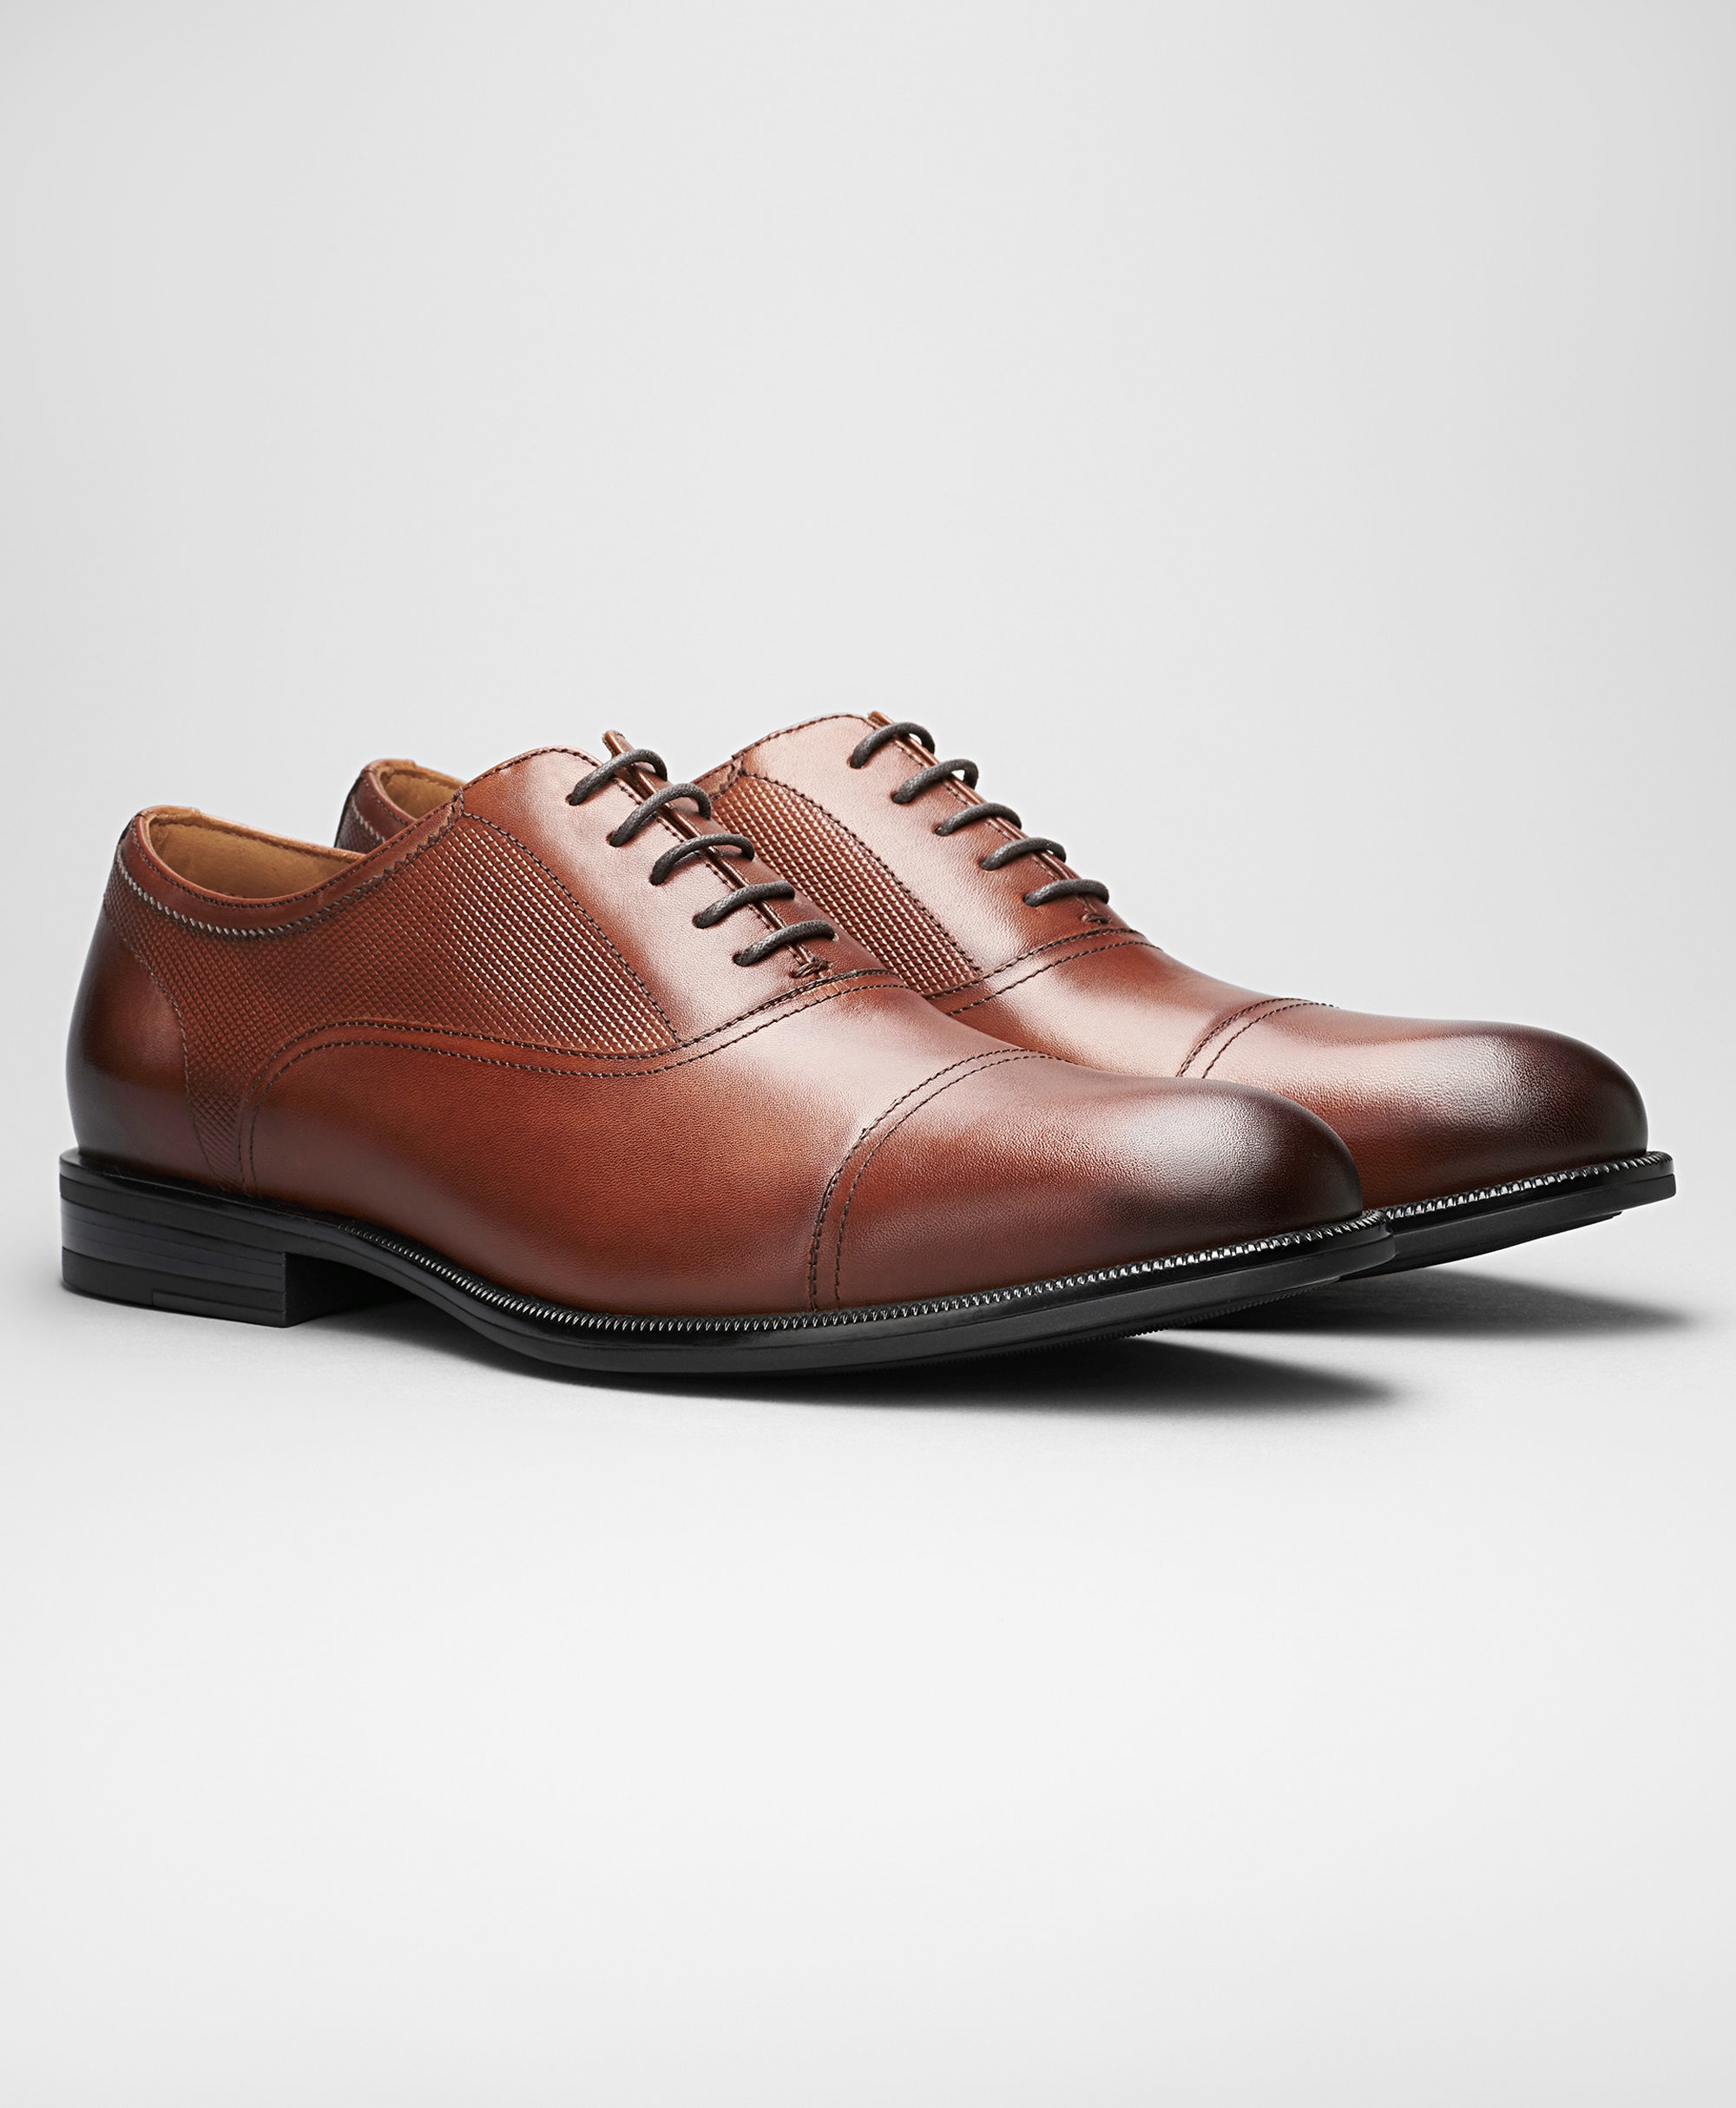 Мужская обувь хендерсон. Henderson ботинки мужские коричневые. Henderson ботинки 2020. Хендерсон оксфорды. Обувь Henderson SS- 0286 Brown.